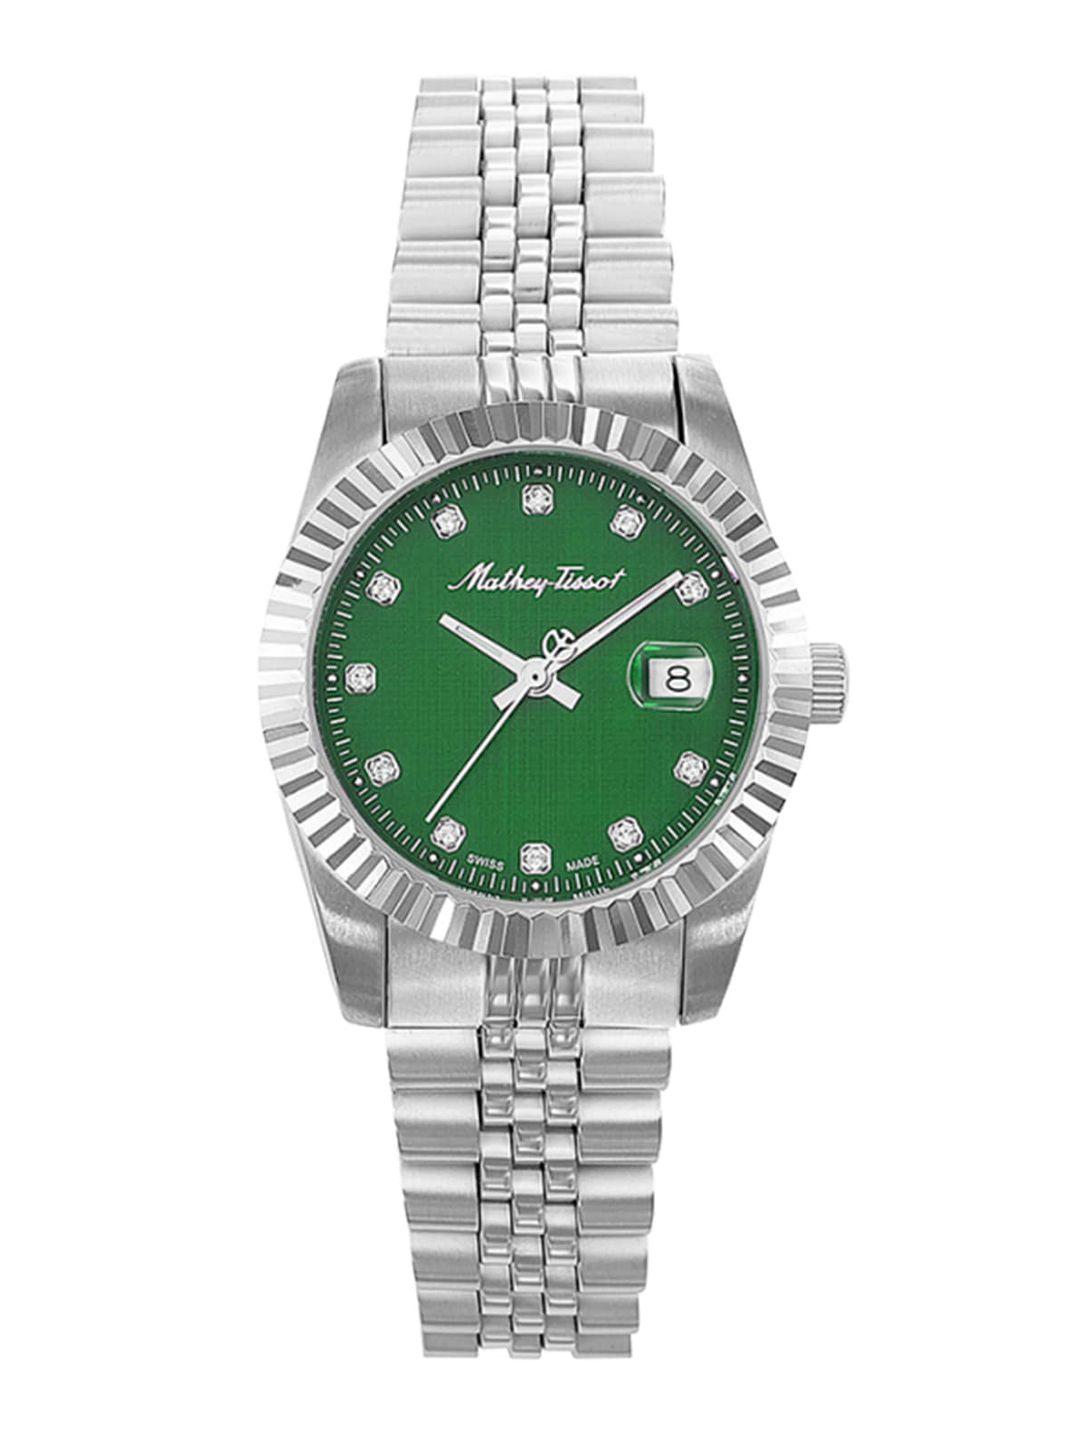 mathey-tissot women green brass dial & silver toned analogue watch - d810av